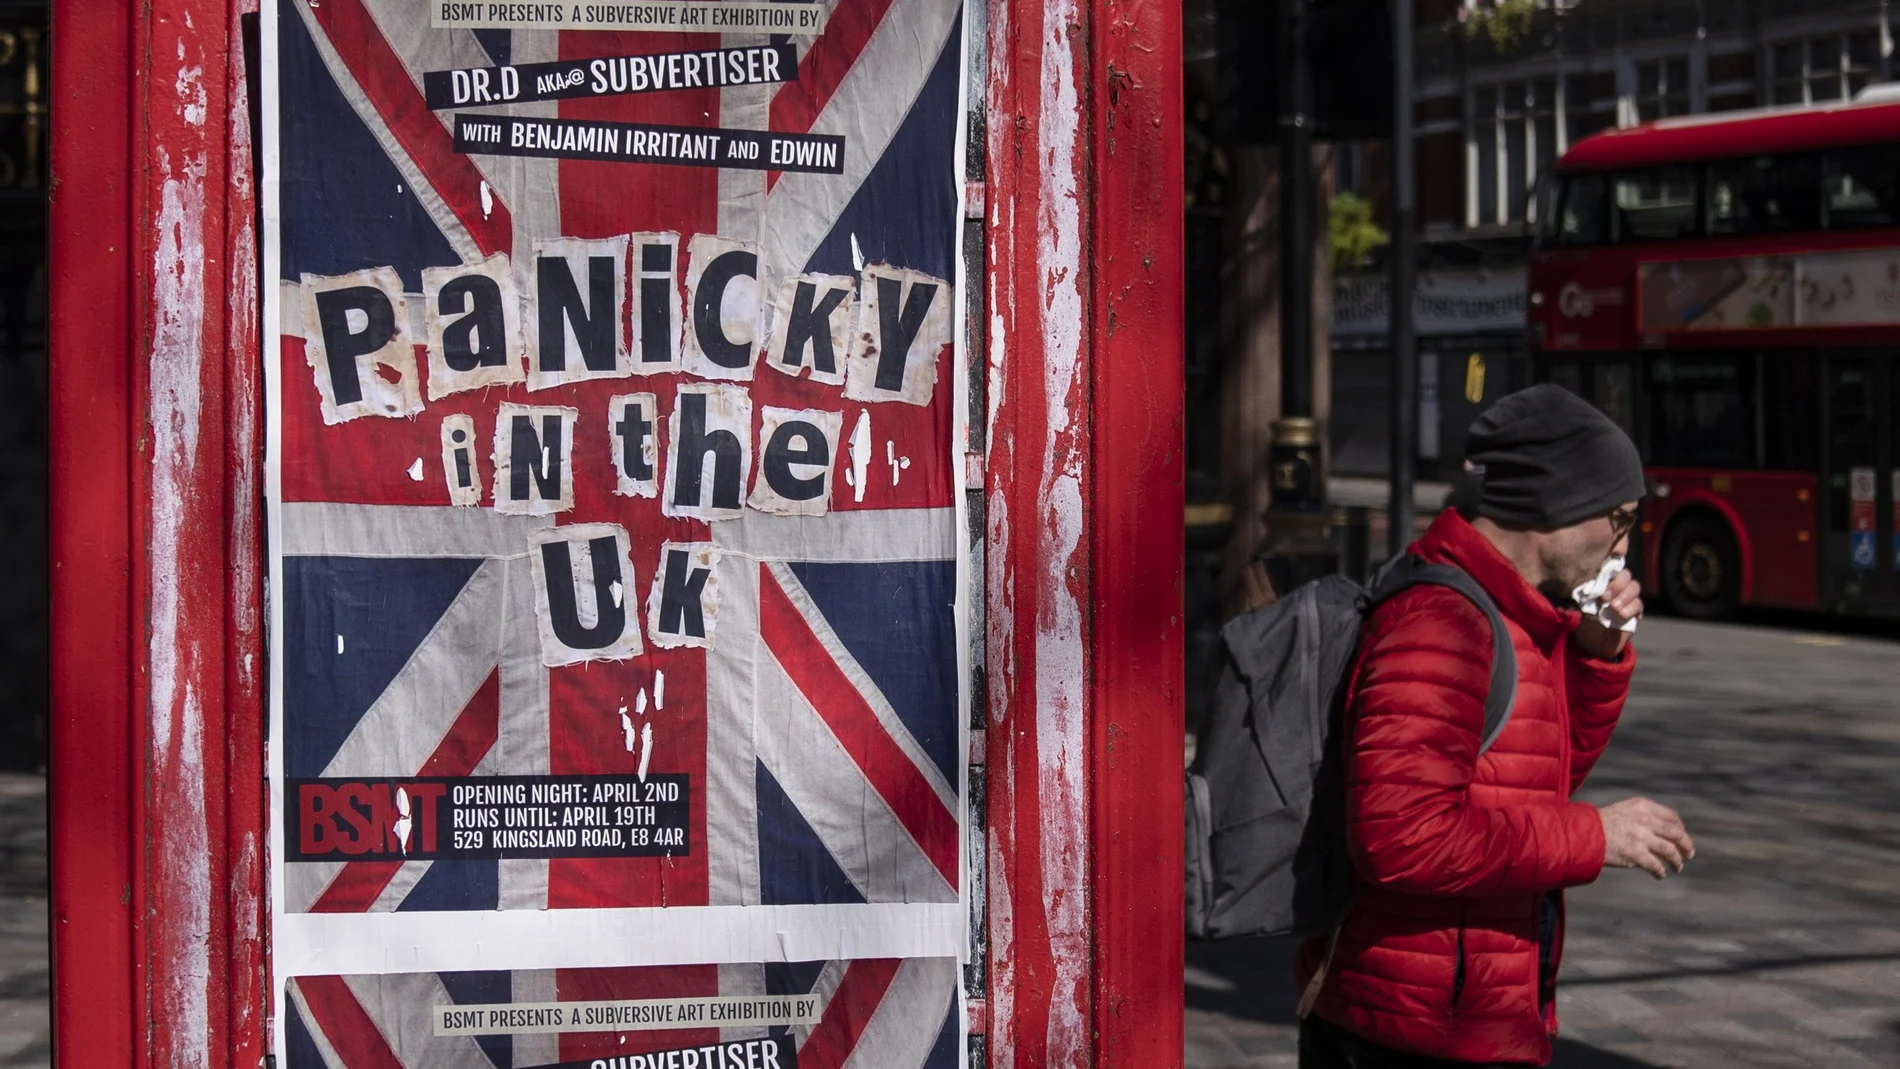 Cartel publicitario en una calle de Londres.